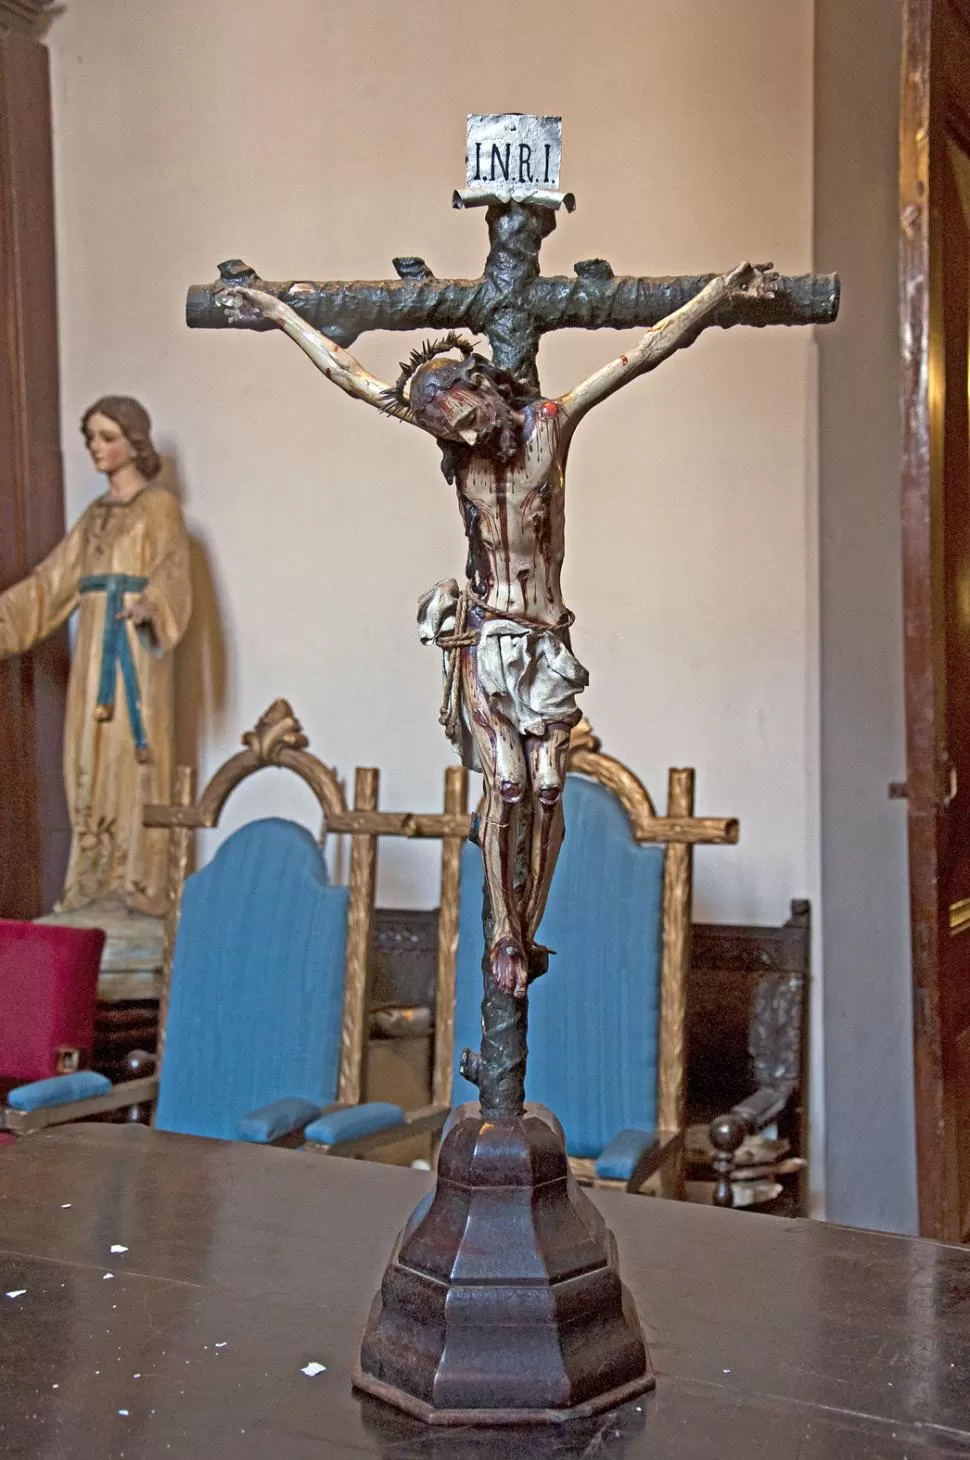 -CRISTO DE LOS CONGRESALES. Se conserva actualmente en el convento de San Francisco, junto con otros muebles históricos.
